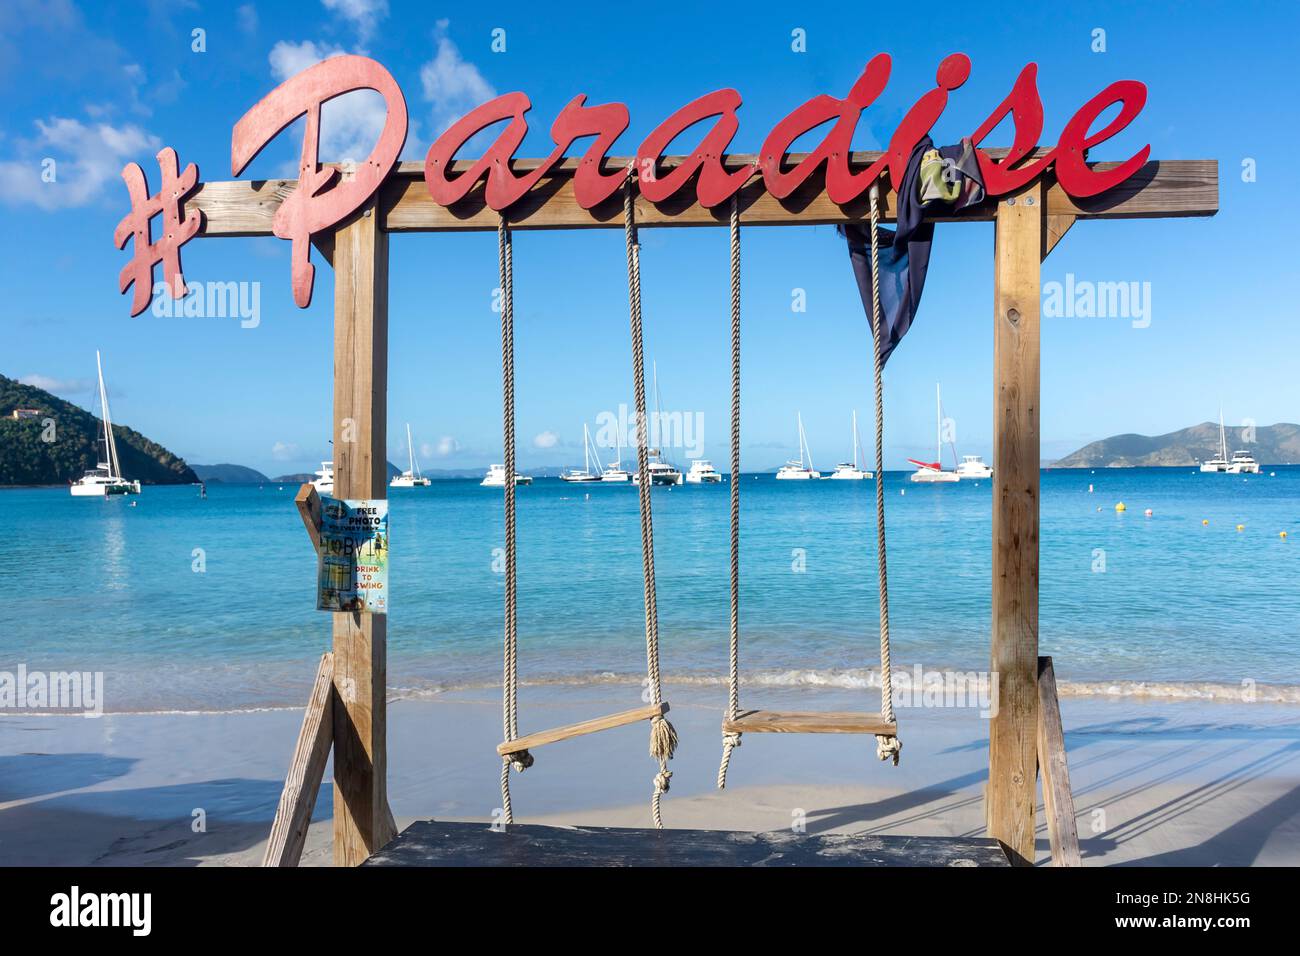 Paradise Club Swing am Strand, Cane Garden Bay, Tortola, die Britischen Jungferninseln (BVI), die kleinen Antillen, die Karibik Stockfoto